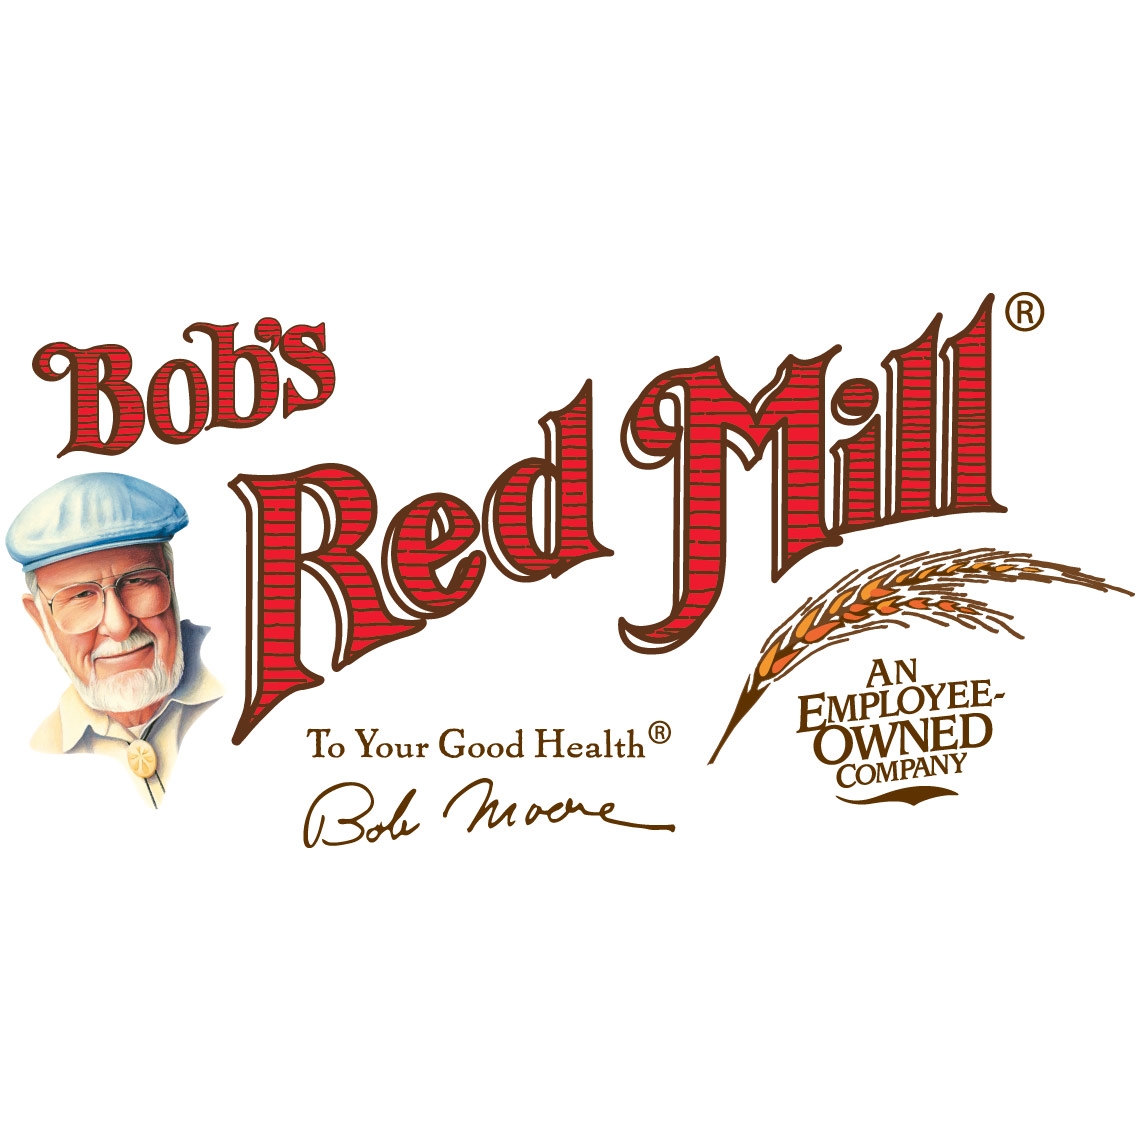 Bob's Red Mill Milk Powder, Nonfat, Dry - 22 oz